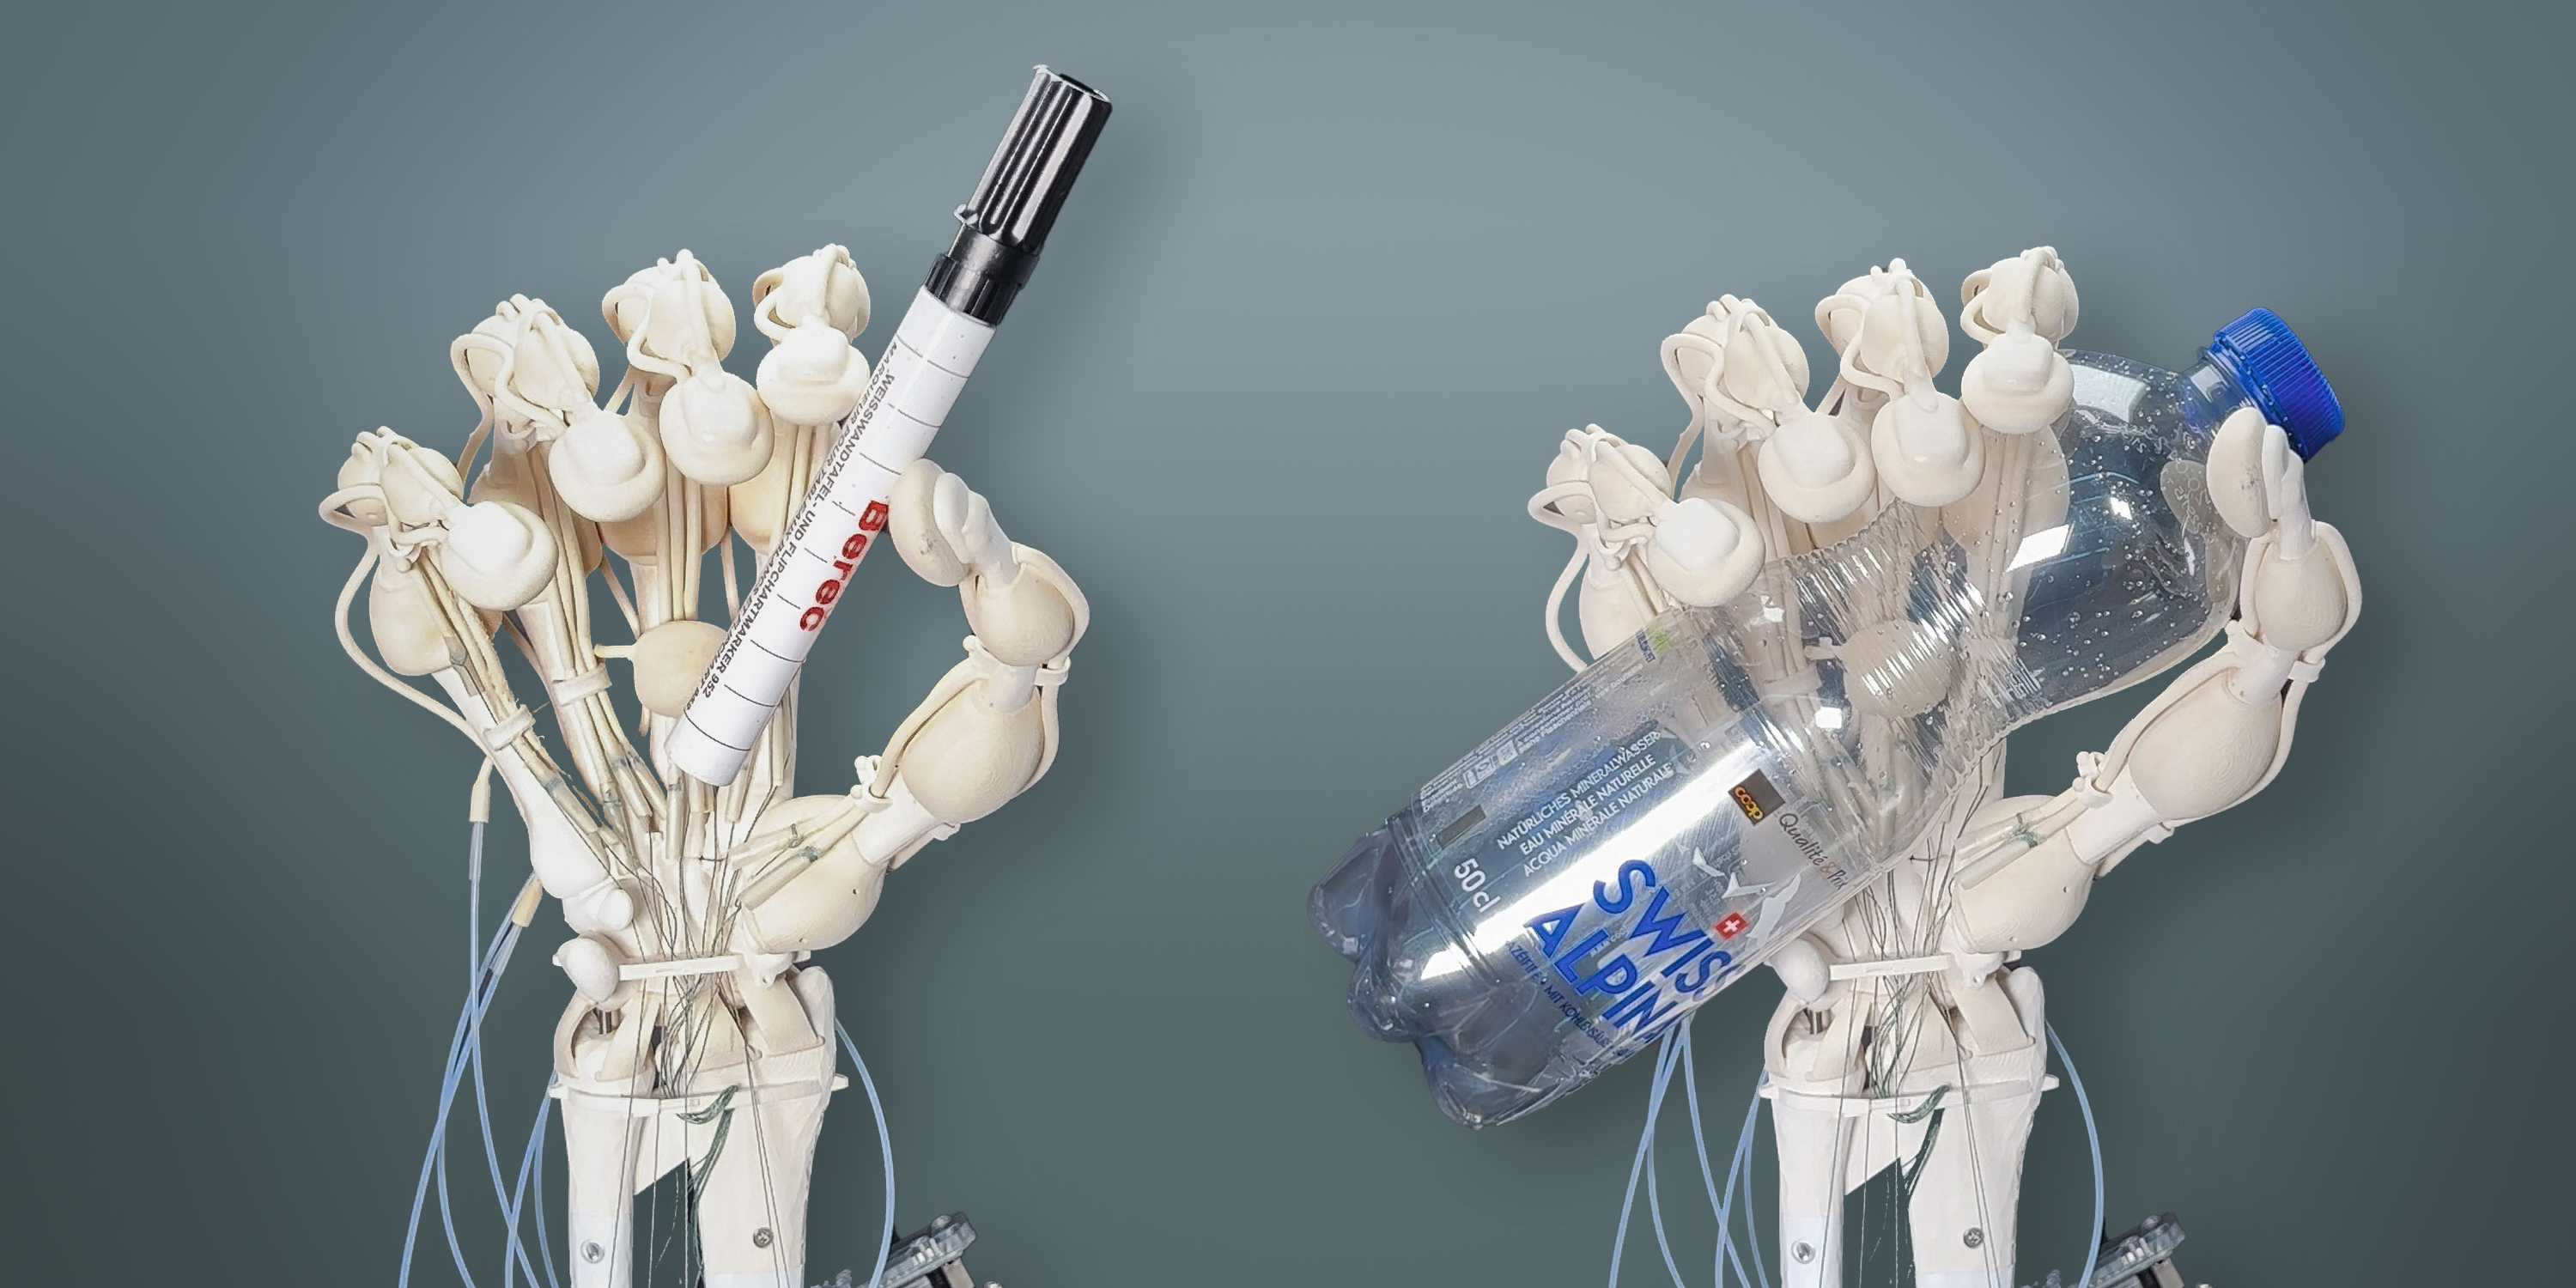 Des chercheurs de l'ETH Zurich ont réussi à imprimer pour la première fois un bras robotisé avec des os, des ligaments et des tendons.